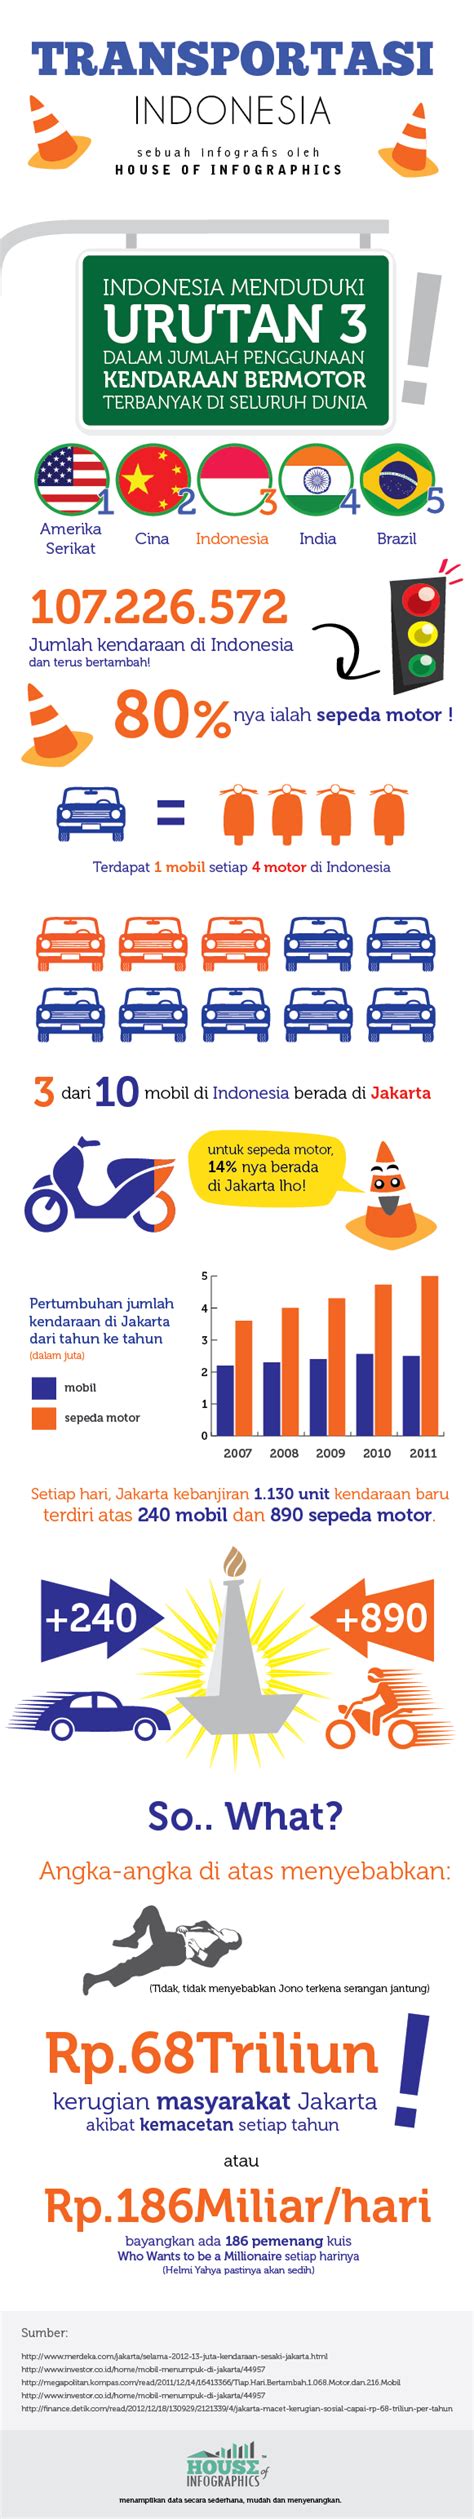 Infografis Sampah Jakarta House Of Infographics Infog Vrogue Co